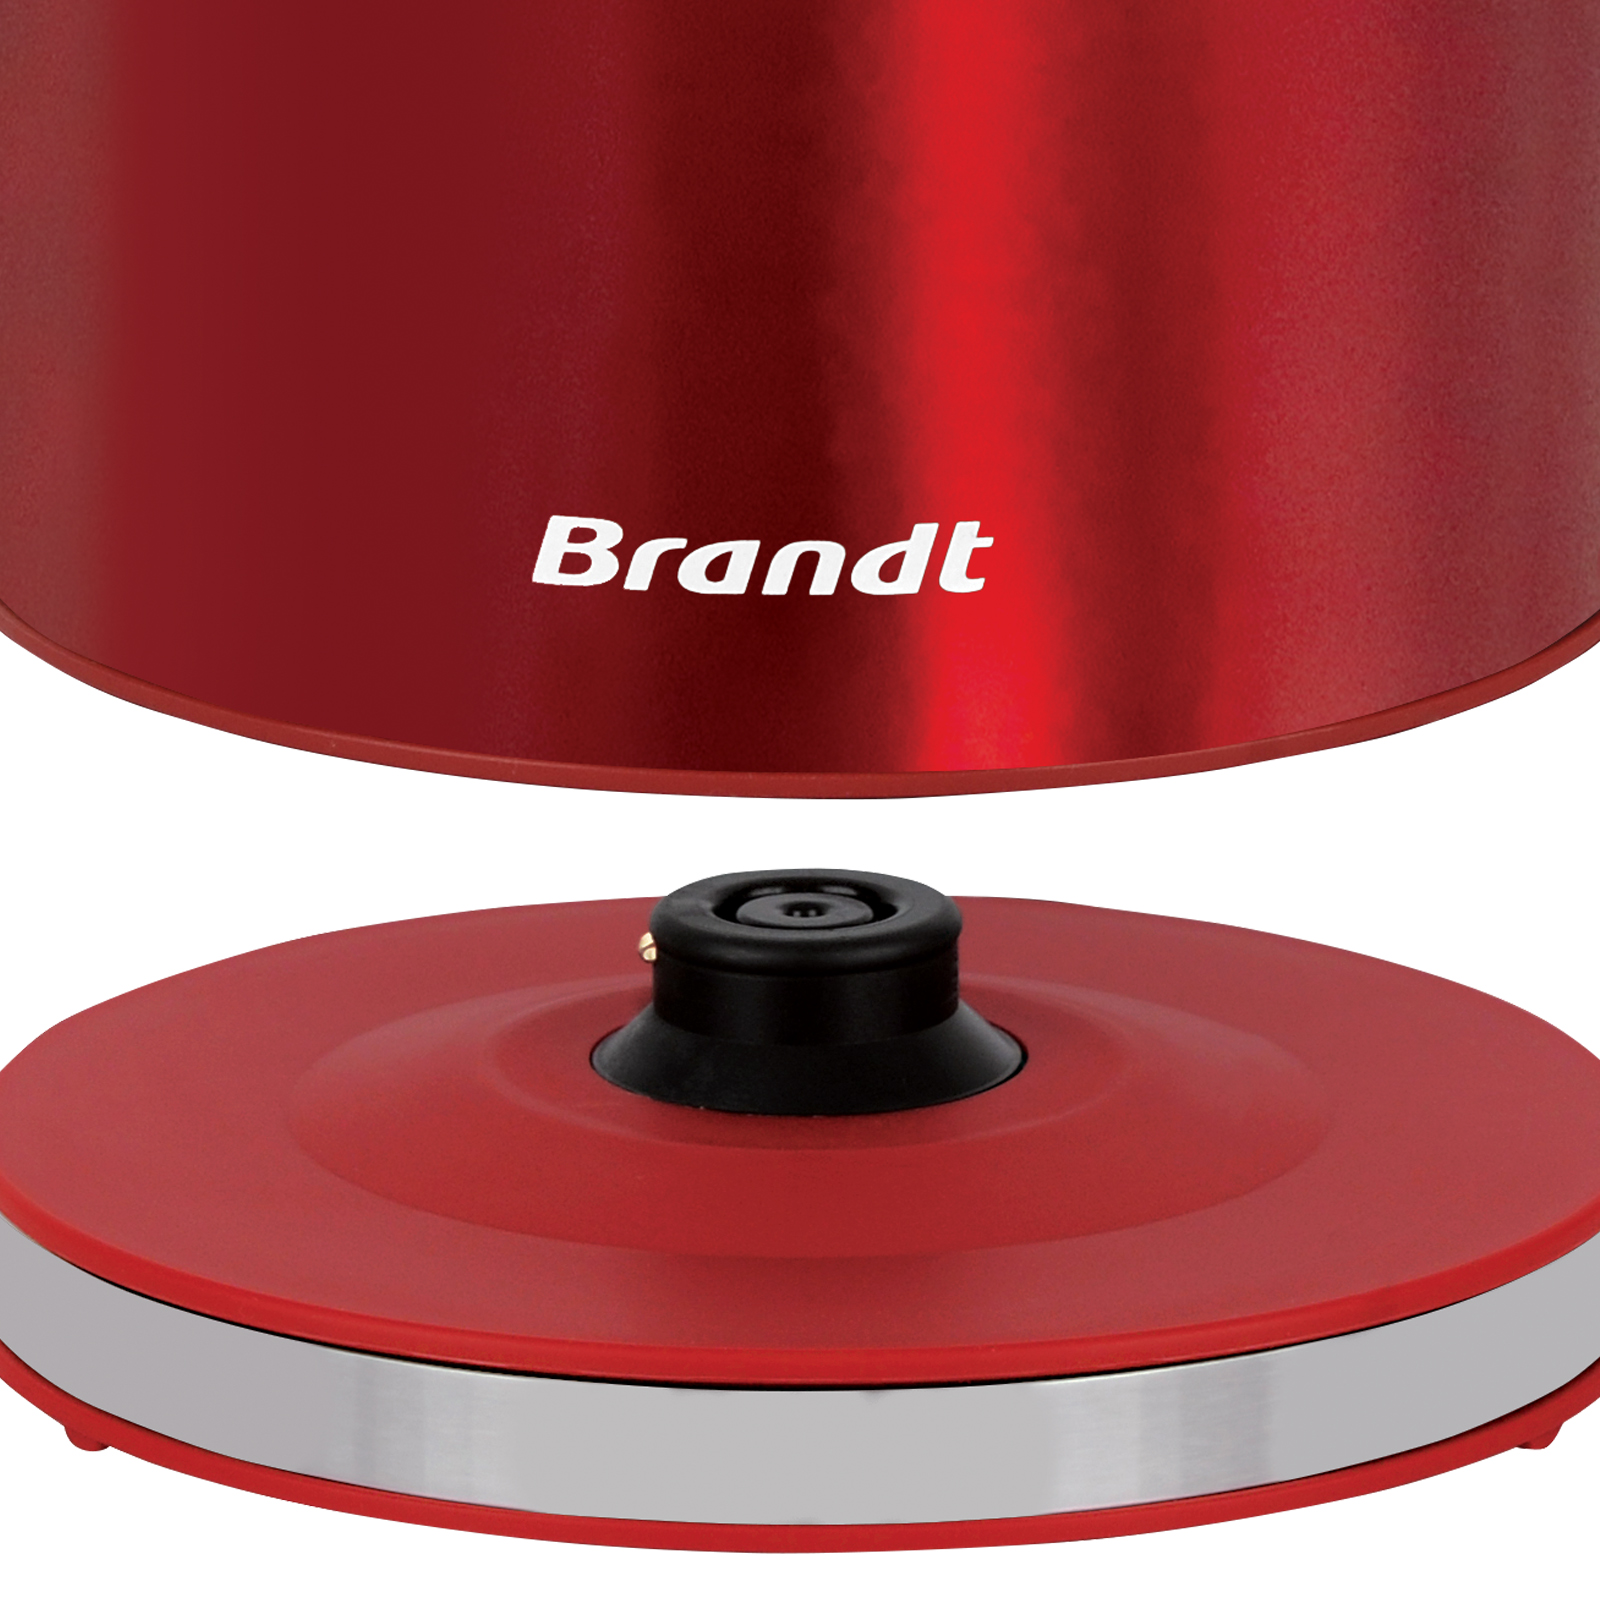 Bouilloire 1,7 L BO1703R 2200 Watts rouge inox Brandt